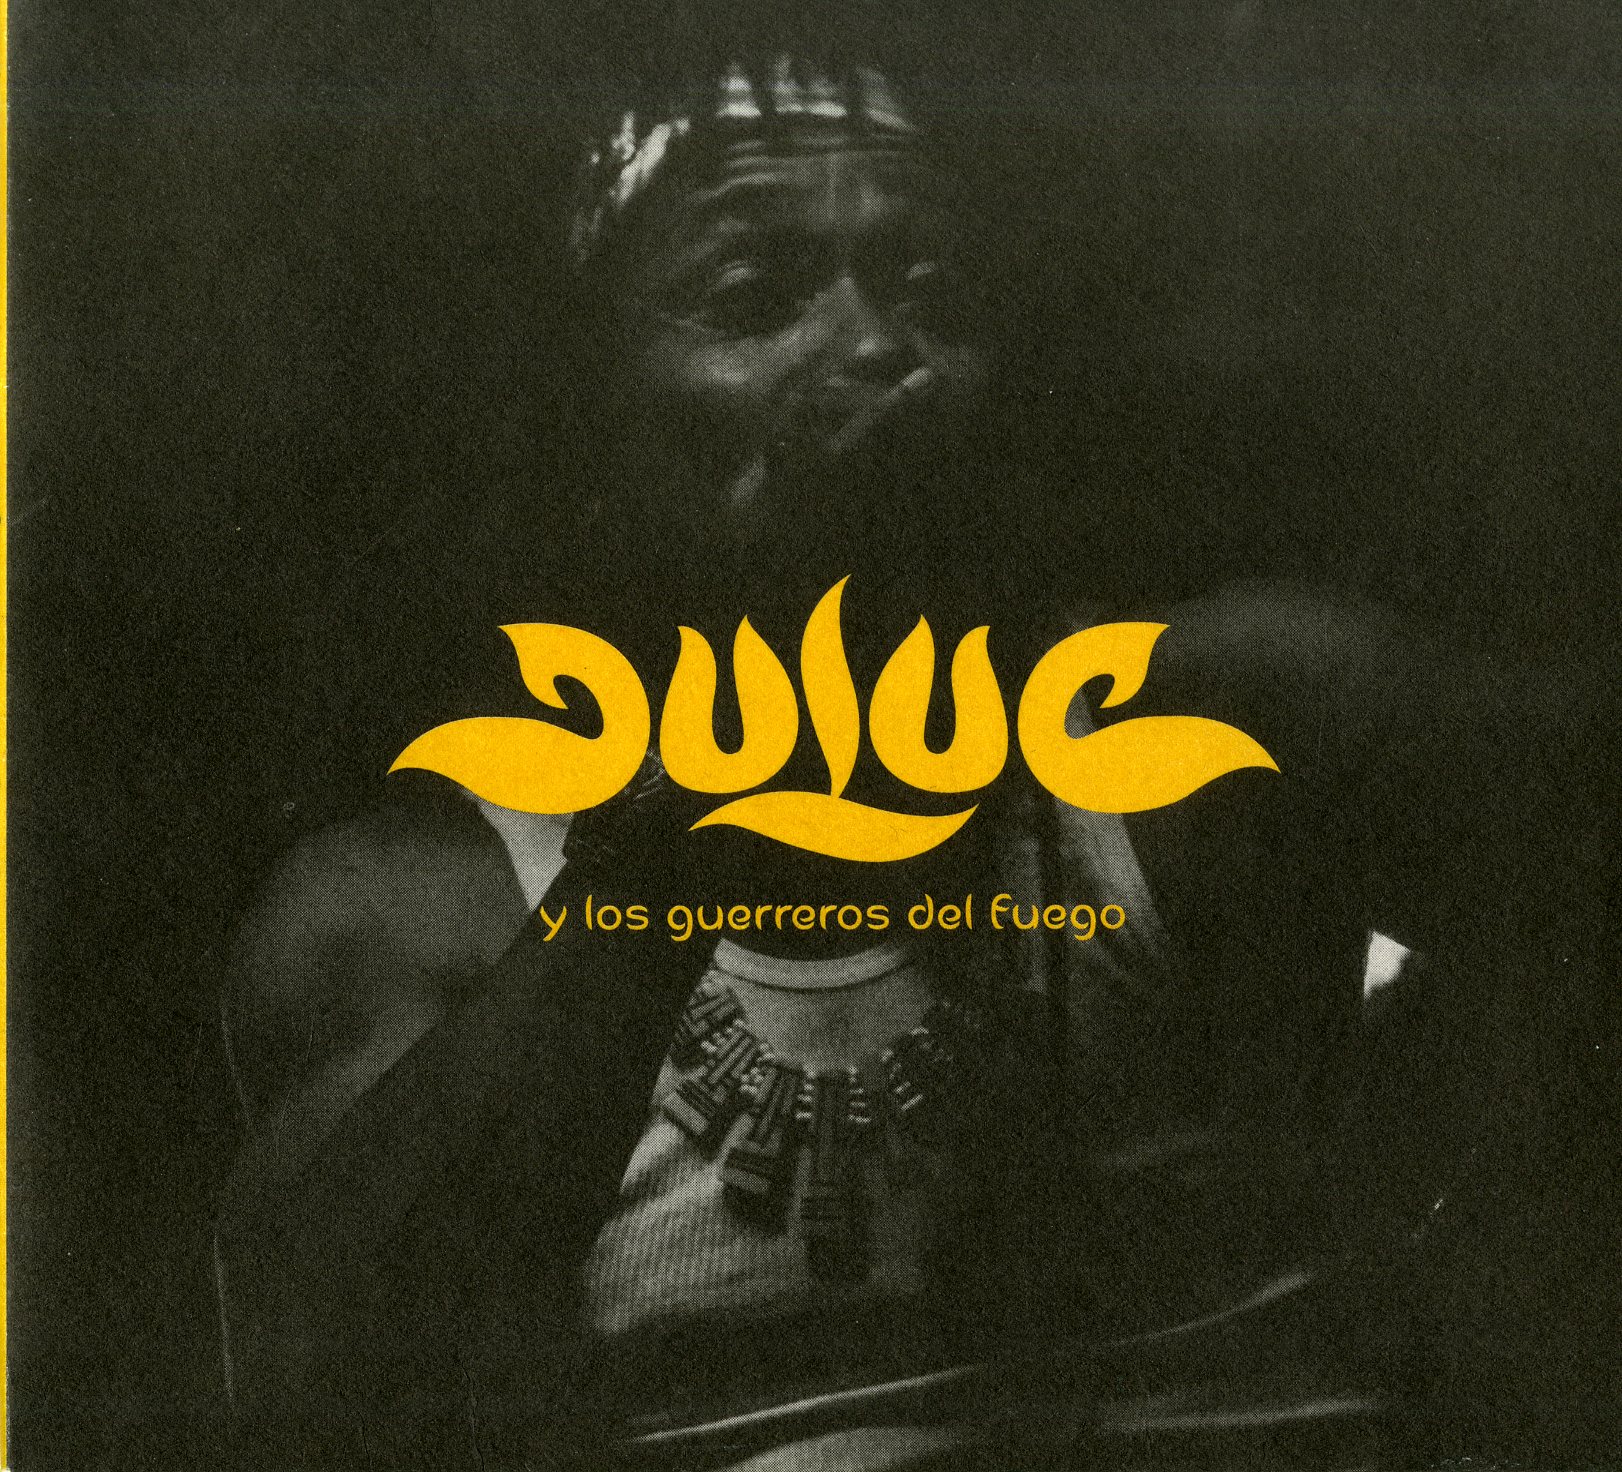 Duluc y los Guerreros del Fuego CD album cover, 2014